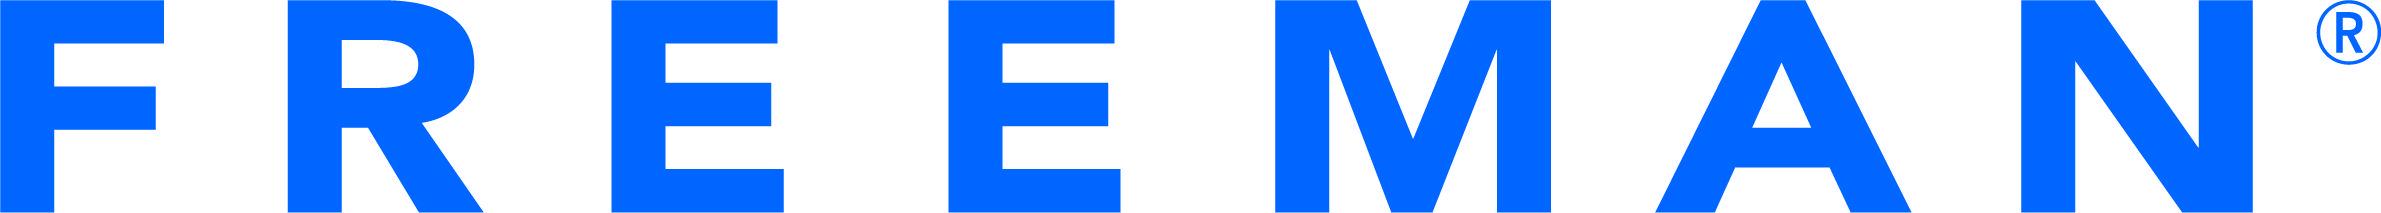 FREEMAN MASTER logo CMYK 2019